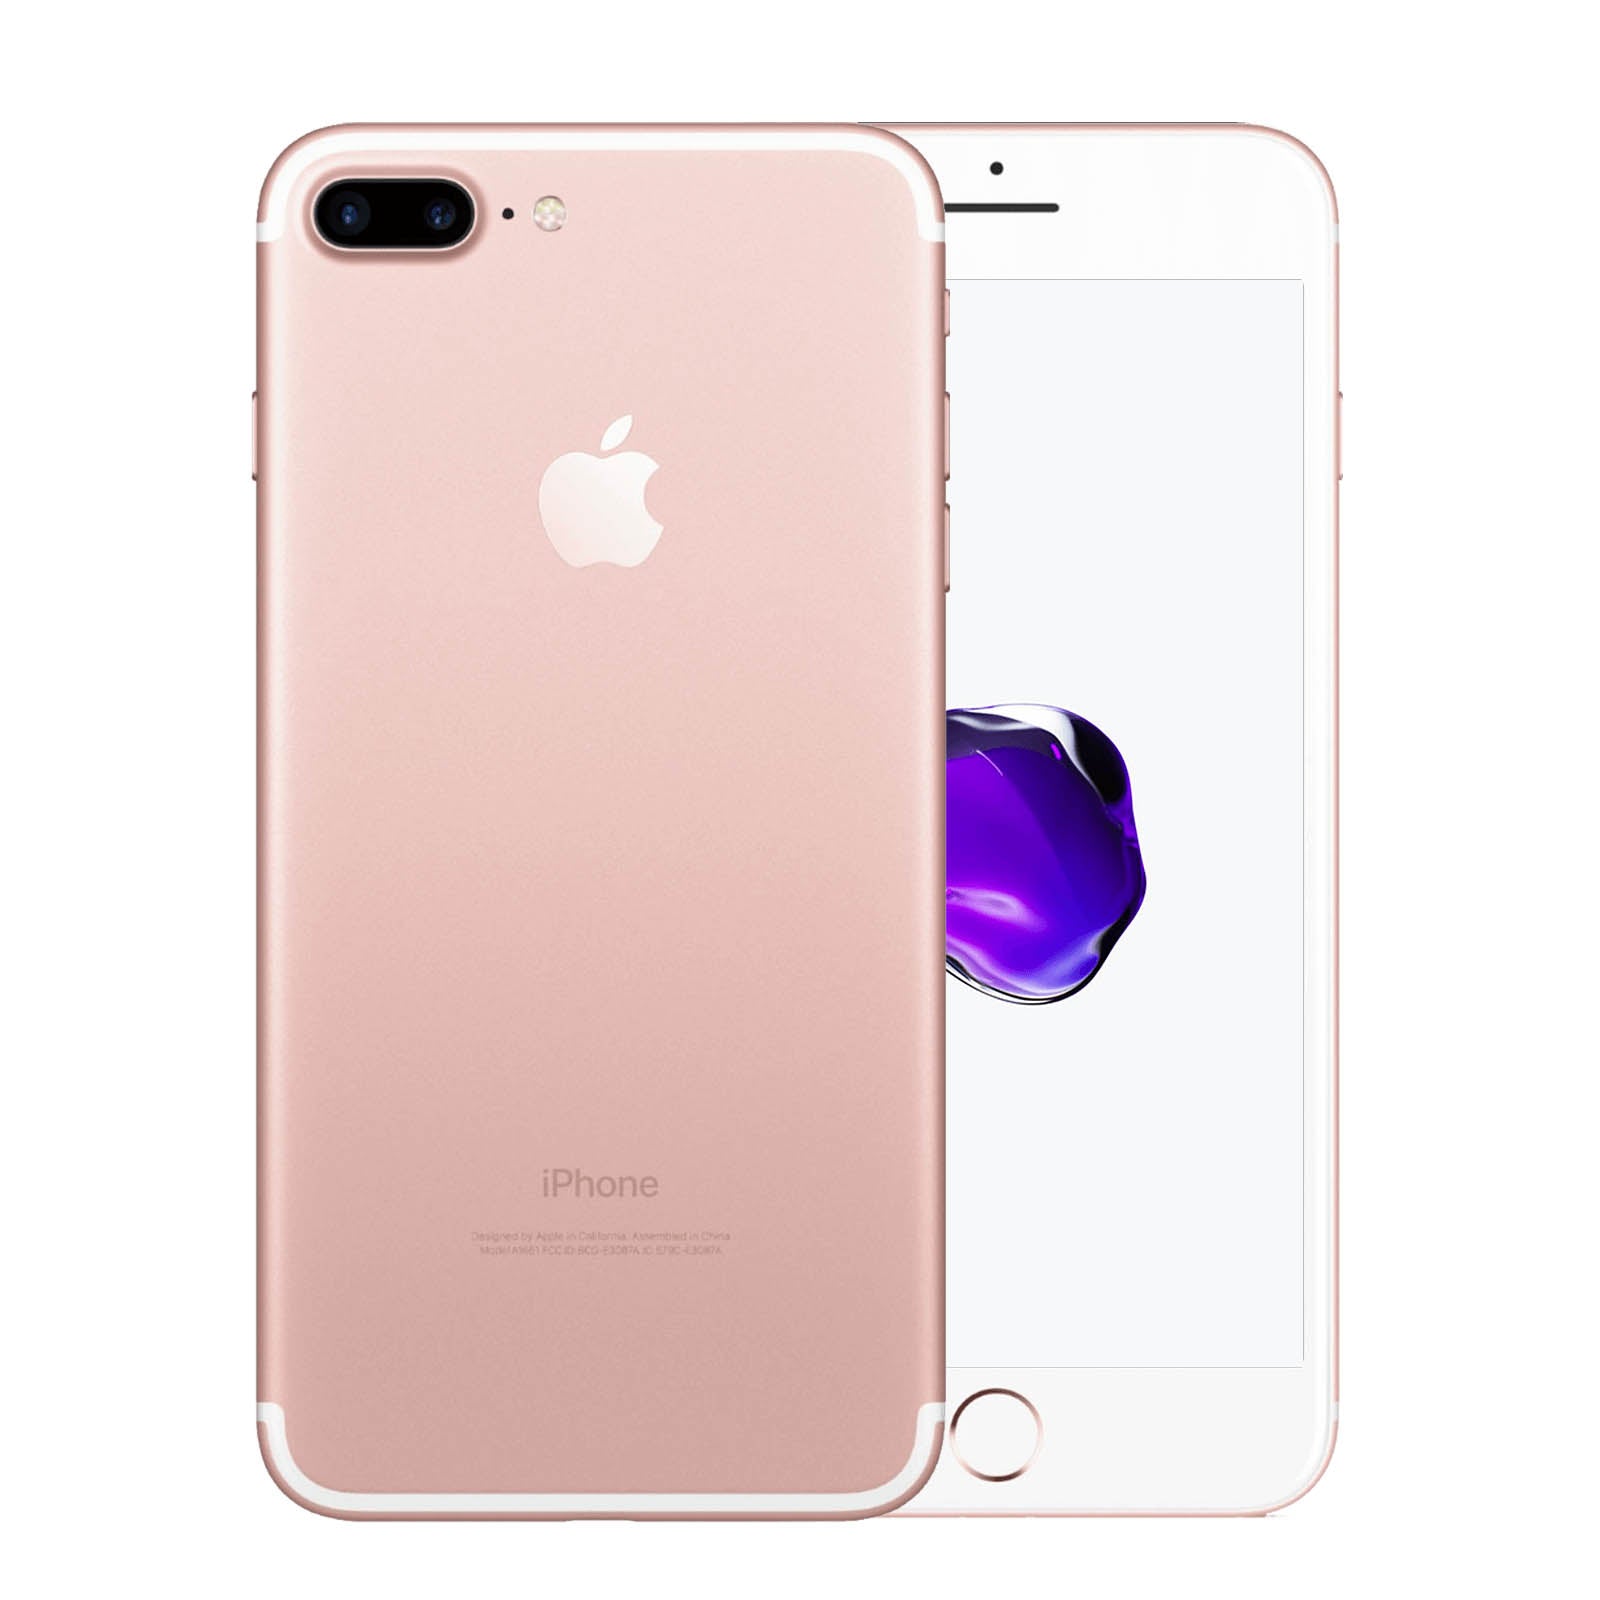 Apple iPhone 7 Plus 256GB Roségold Fair - Ohne Vertrag